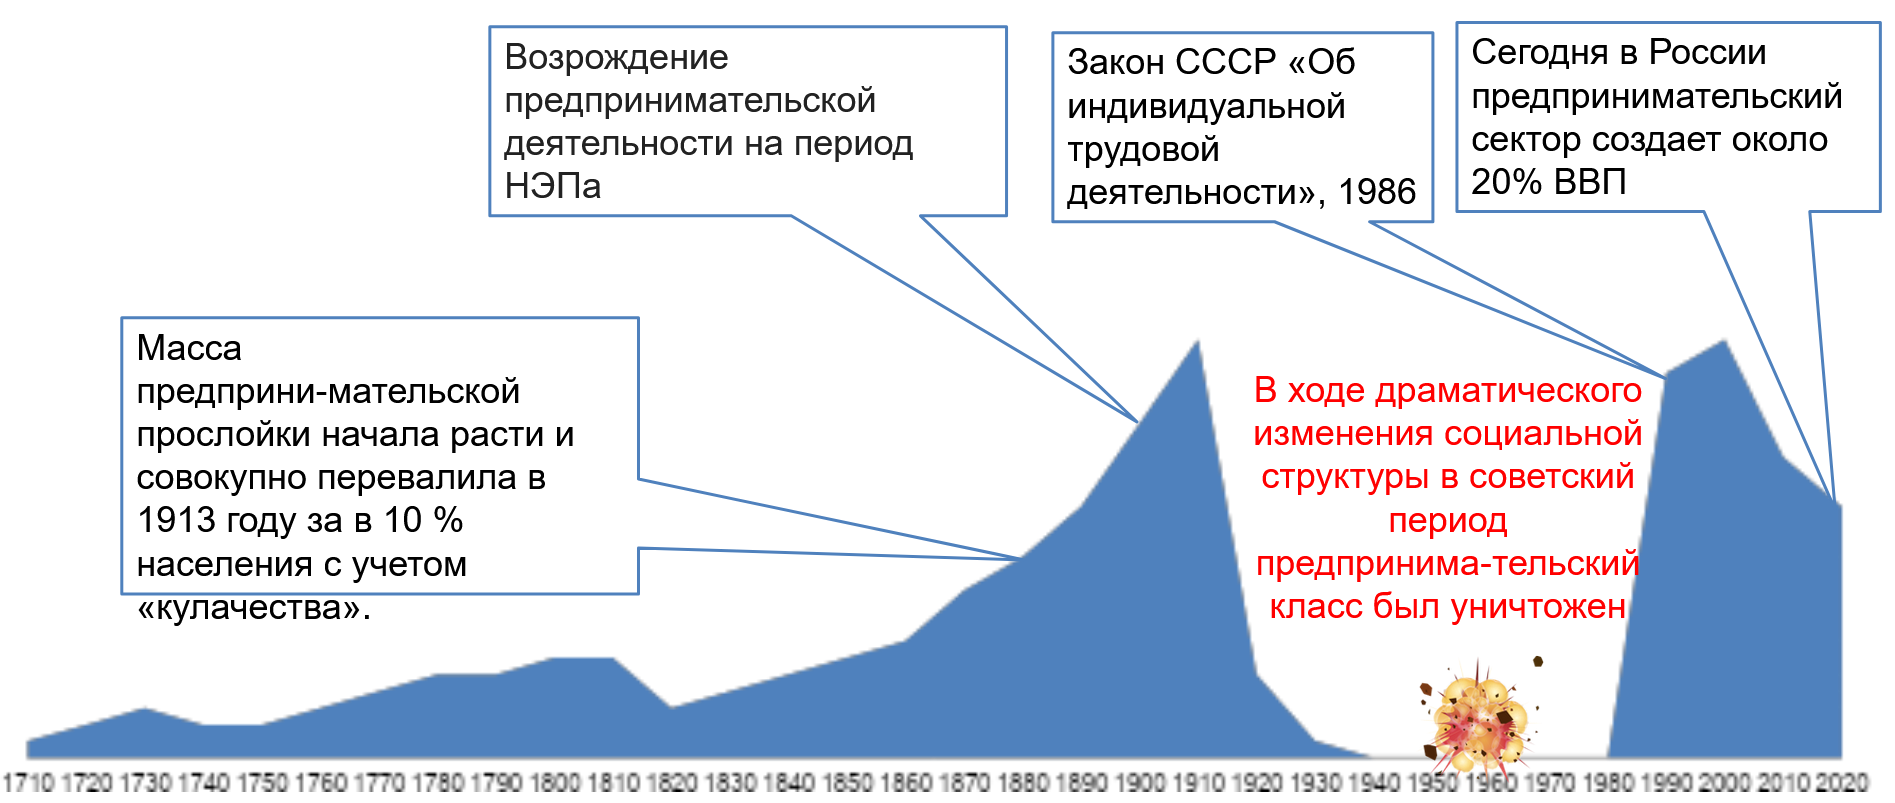 предпринимательство в России времен второй промышленной революции